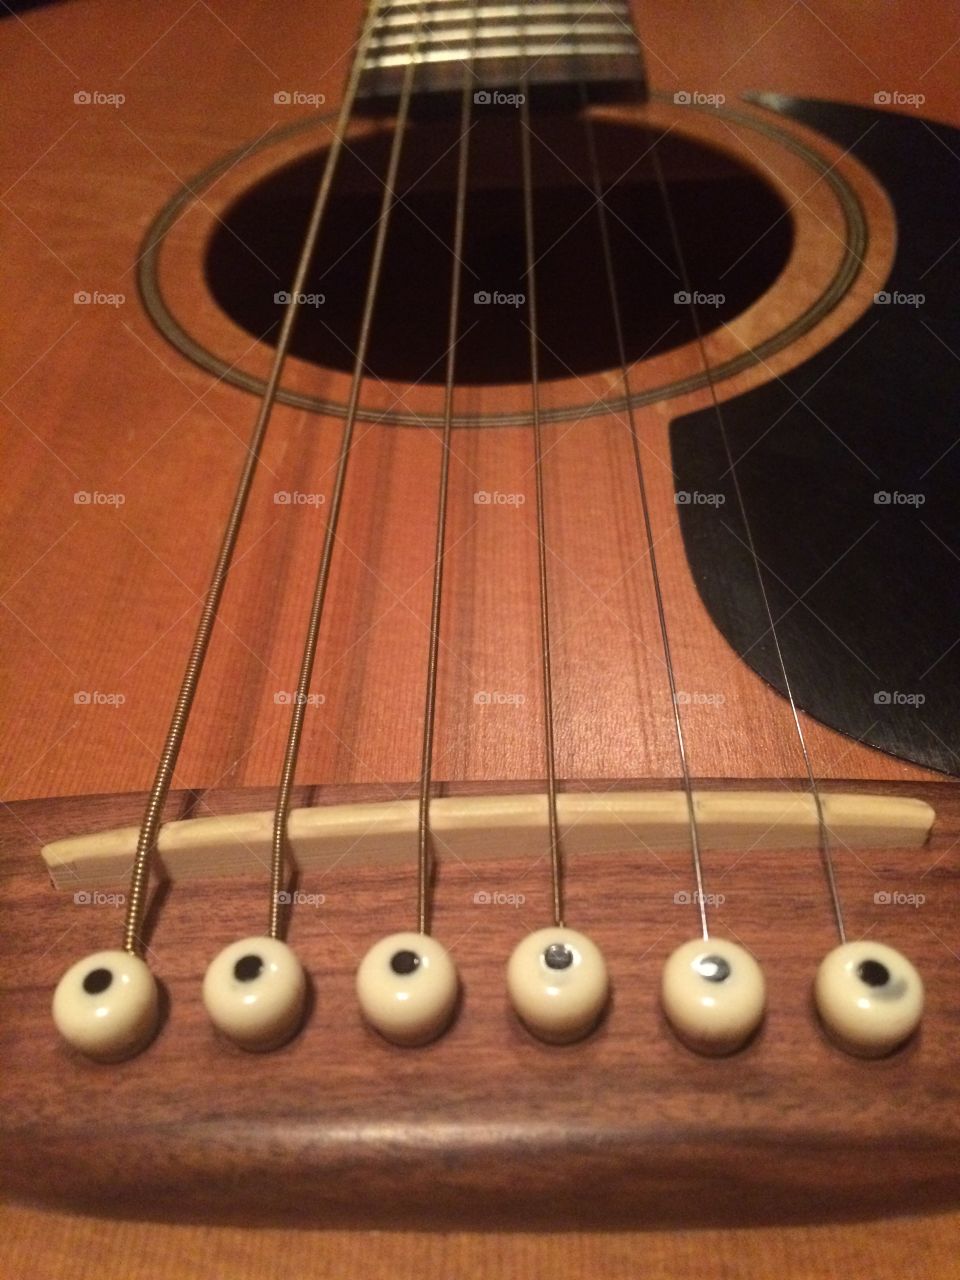 Guitar strings and bridge